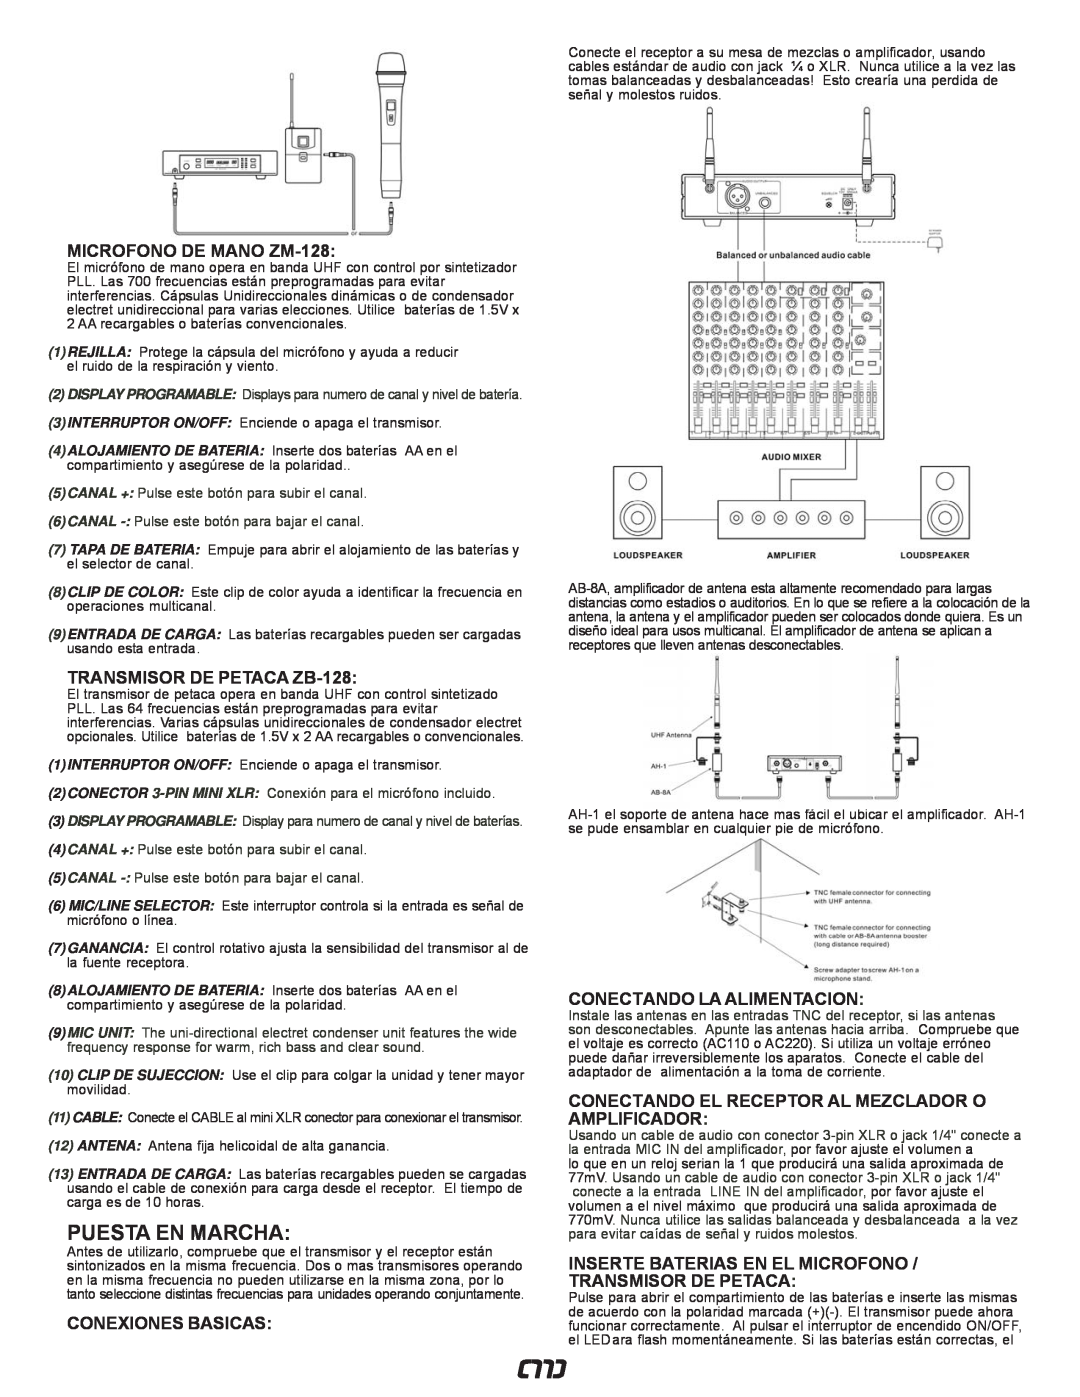 Gemini UZ-1128, UZ-9128 manual Puesta En Marcha, MICROFONO DE MANO ZM-128, TRANSMISOR DE PETACA ZB-128, Conexiones Basicas 